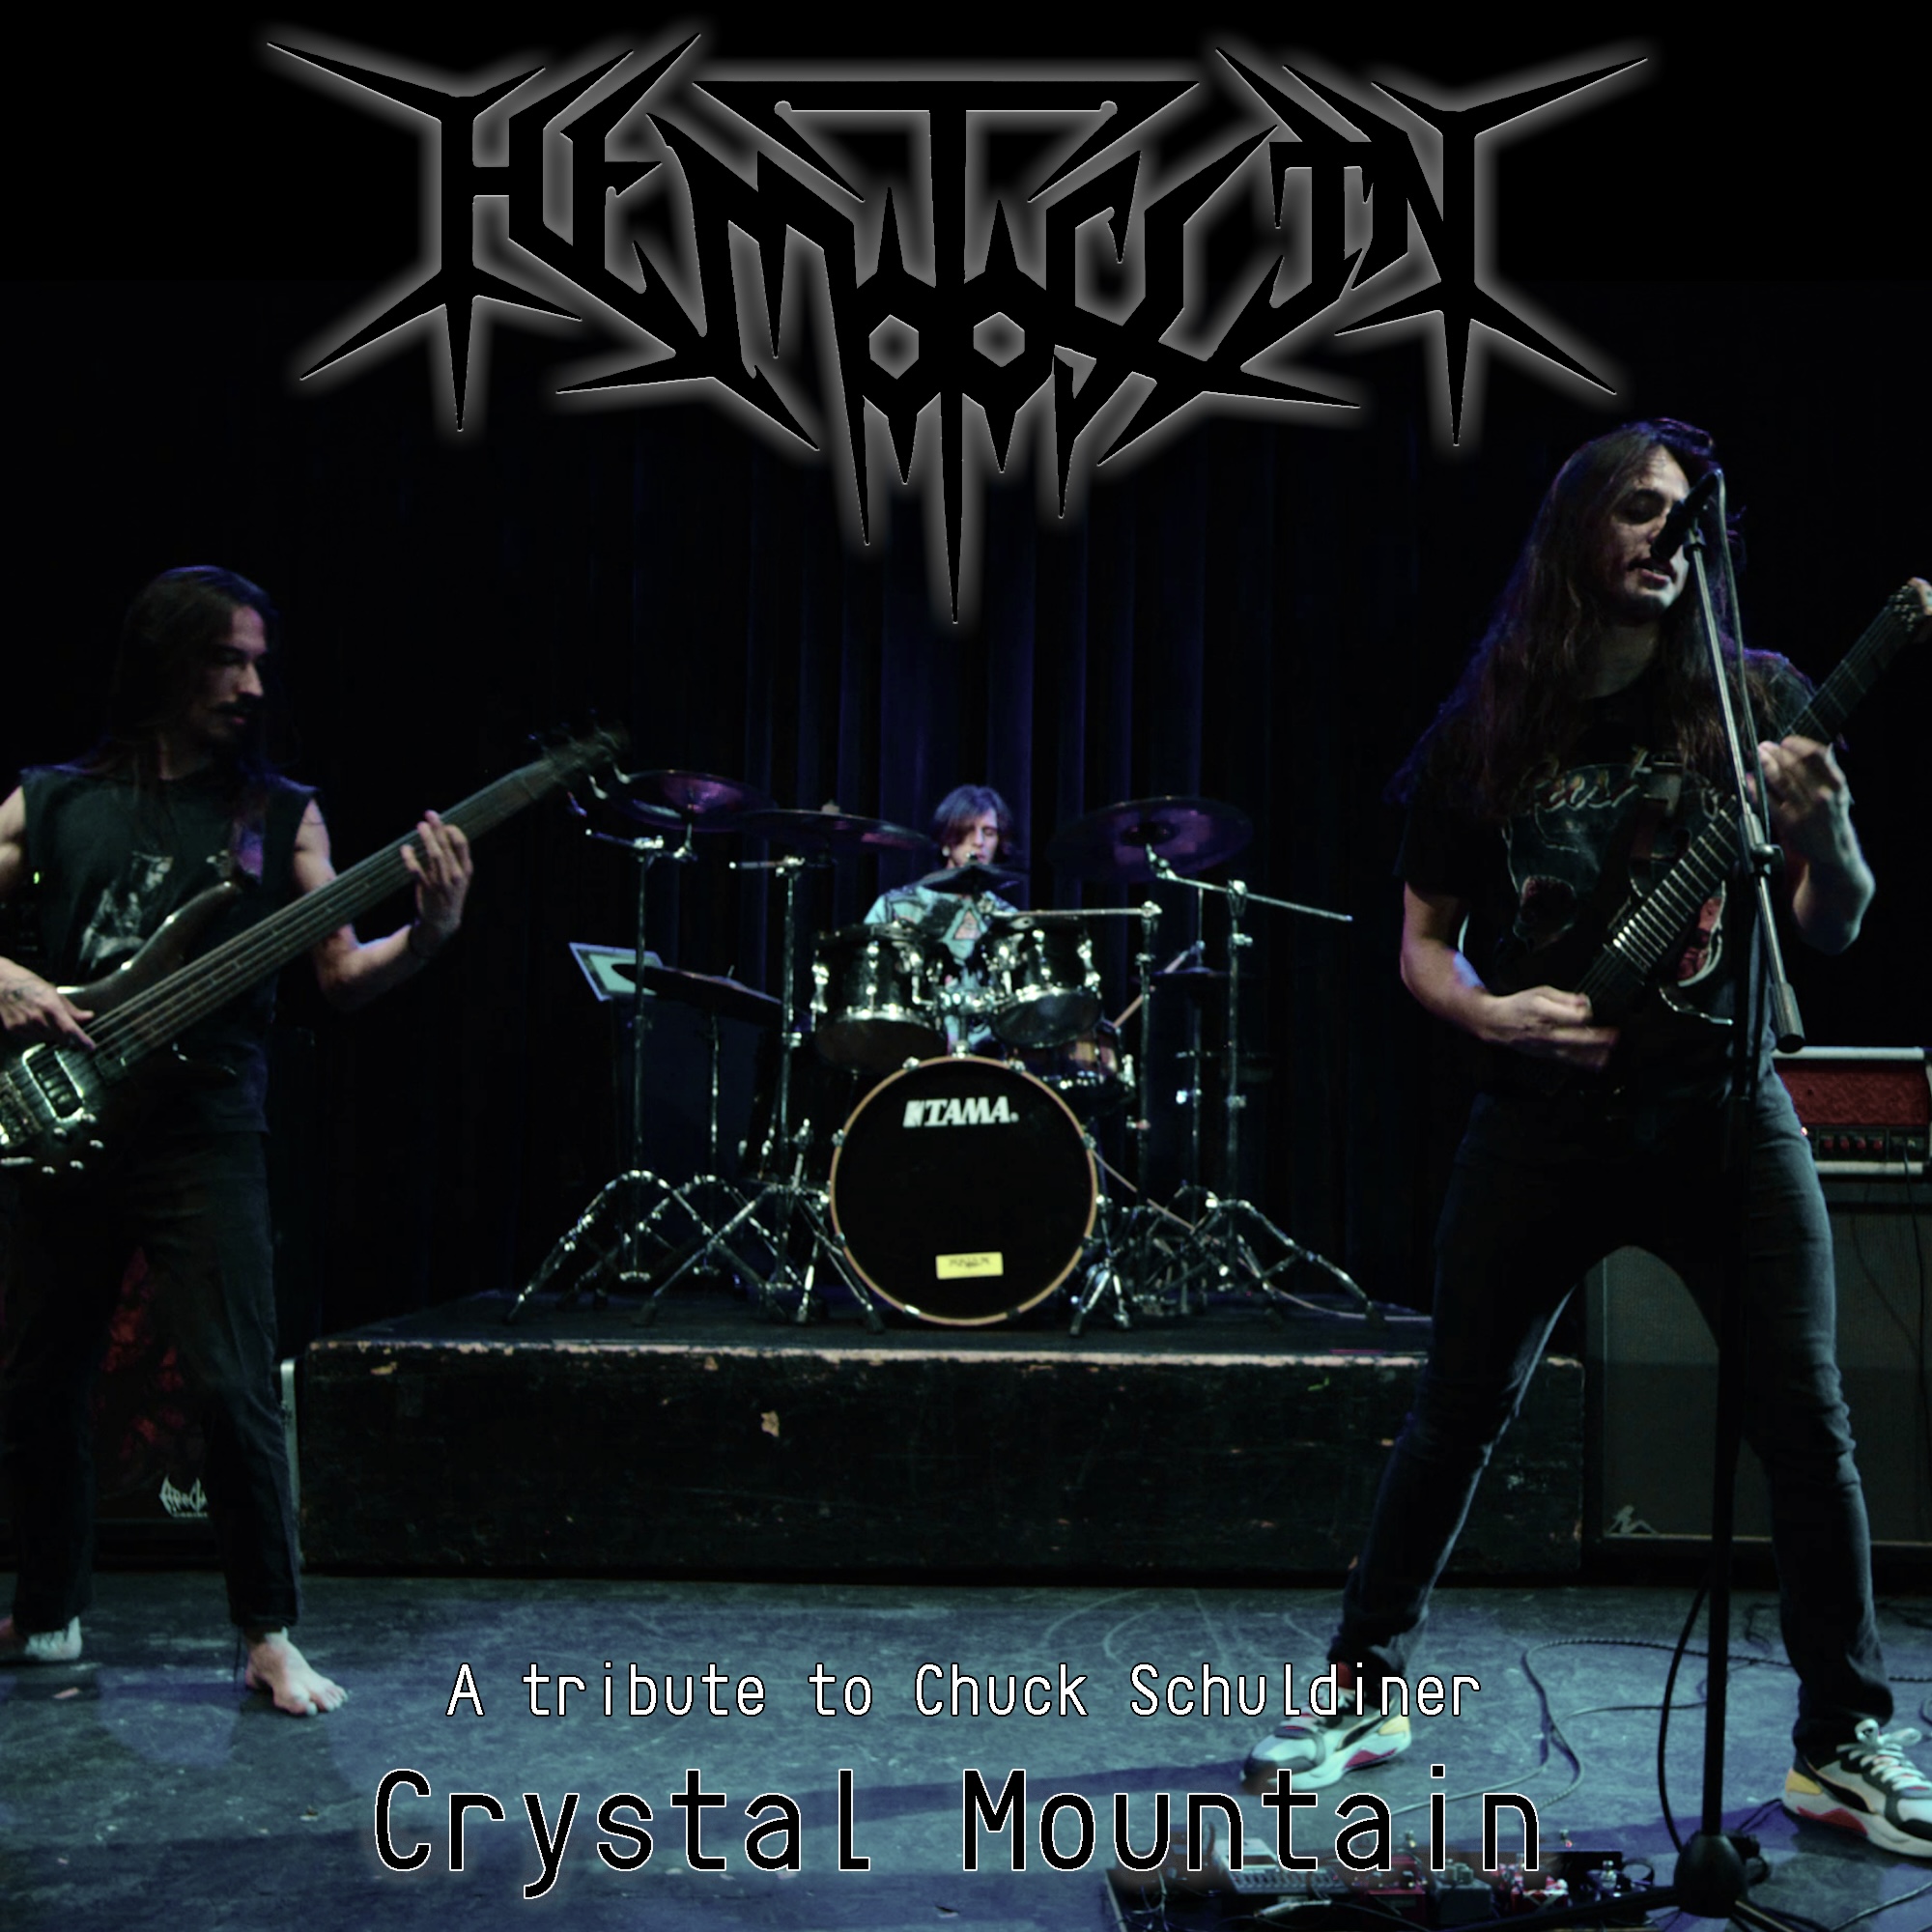 Crystal death. Группа Death Crystal Mountain. Nazxul Band. Morodh 2014 photo.